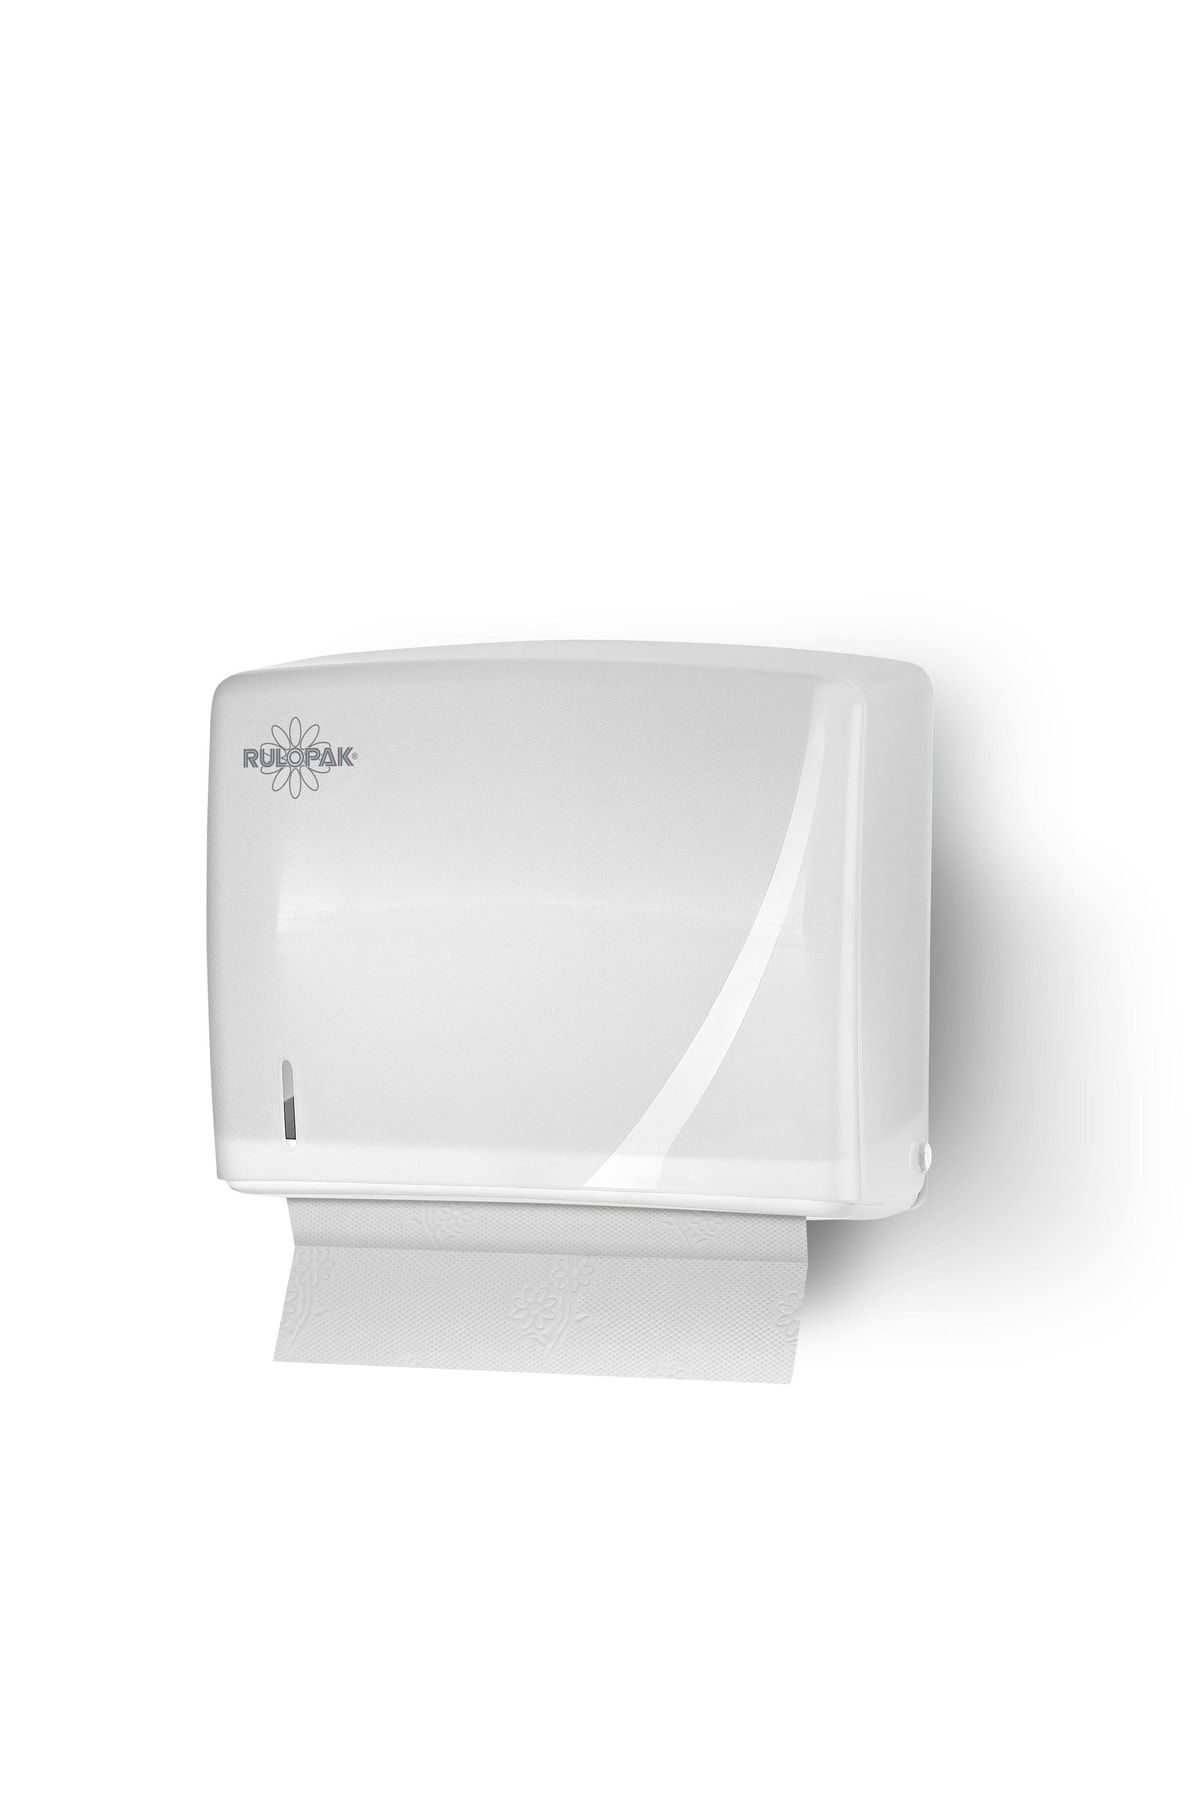 Rulopak Modern C-v Katlama Kağıt Havlu Dispenseri 200'lü Transparan Beyaz